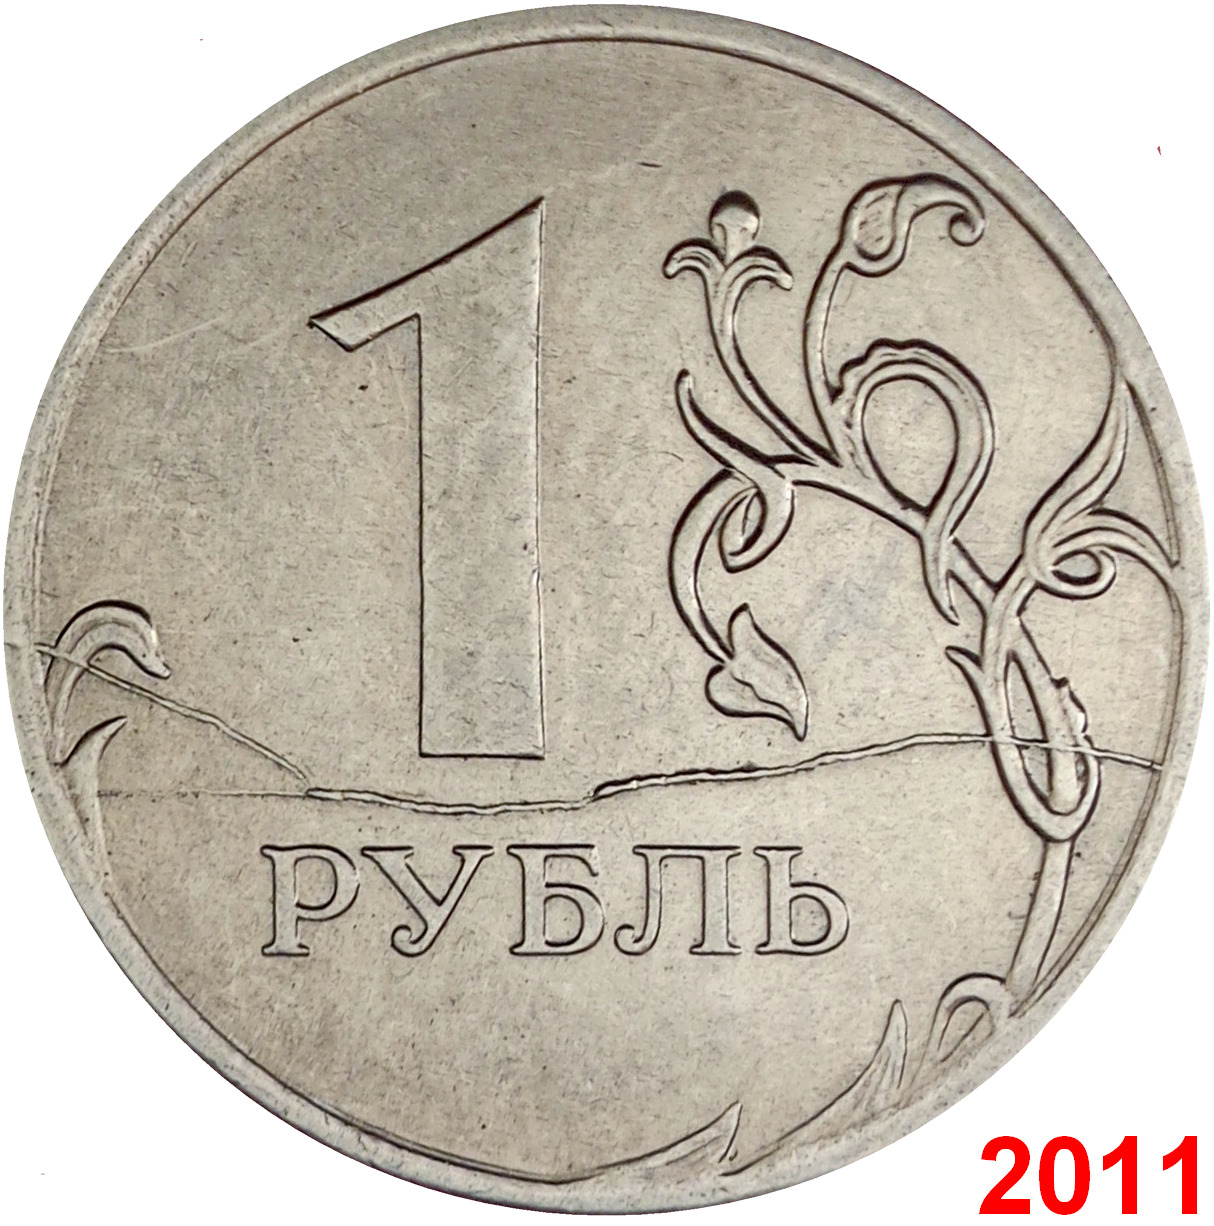 1 руб 2015 года